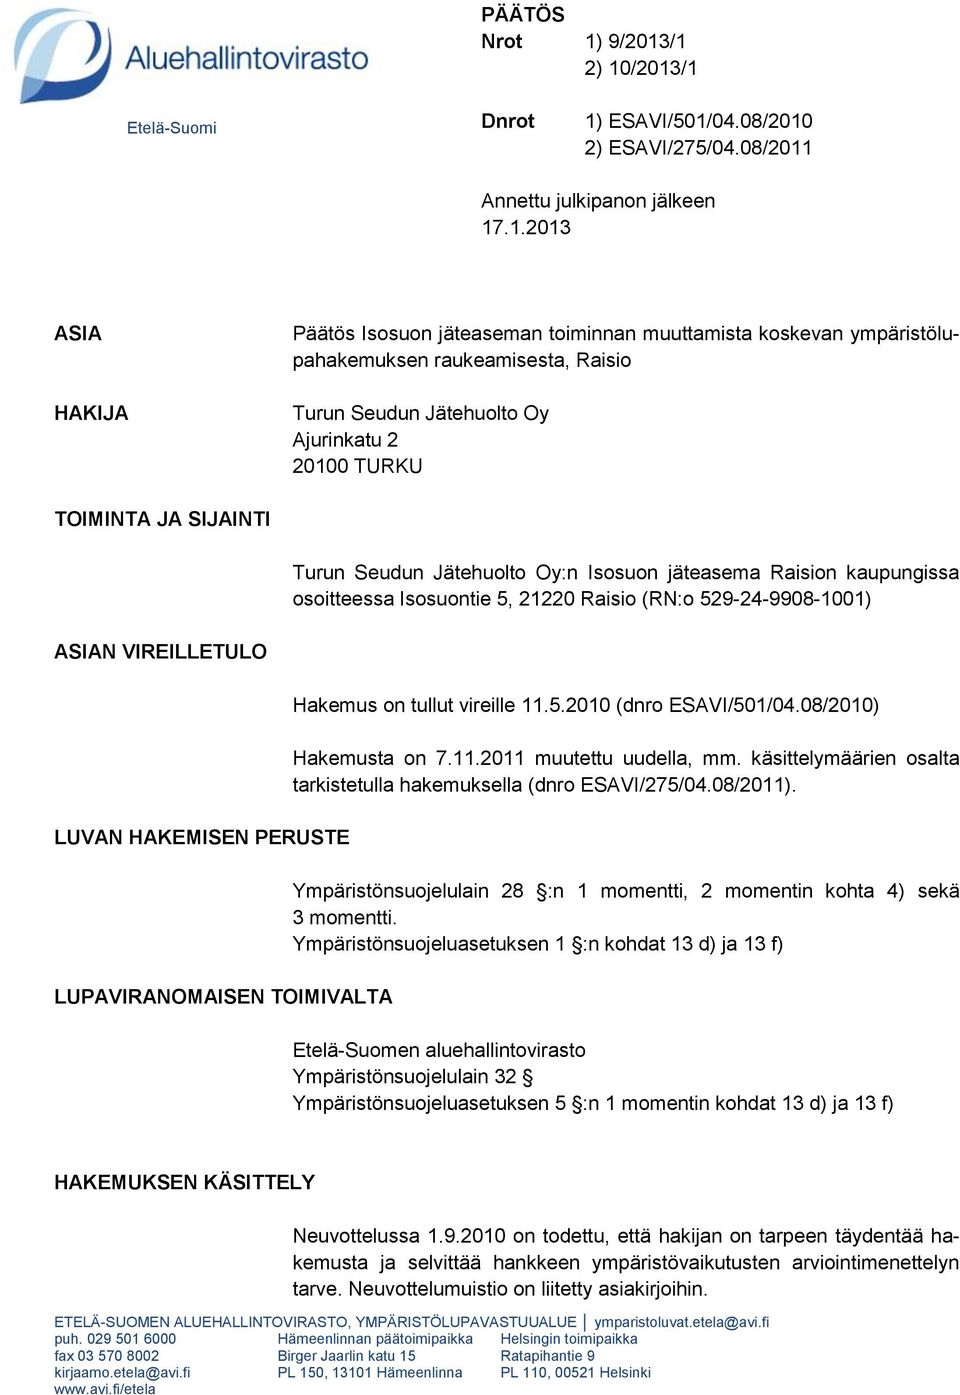 /1 2) 10/2013/1 Etelä-Suomi Dnrot 1) ESAVI/501/04.08/2010 2) ESAVI/275/04.08/2011 Annettu julkipanon jälkeen 17.1.2013 ASIA HAKIJA Päätös Isosuon jäteaseman toiminnan muuttamista koskevan